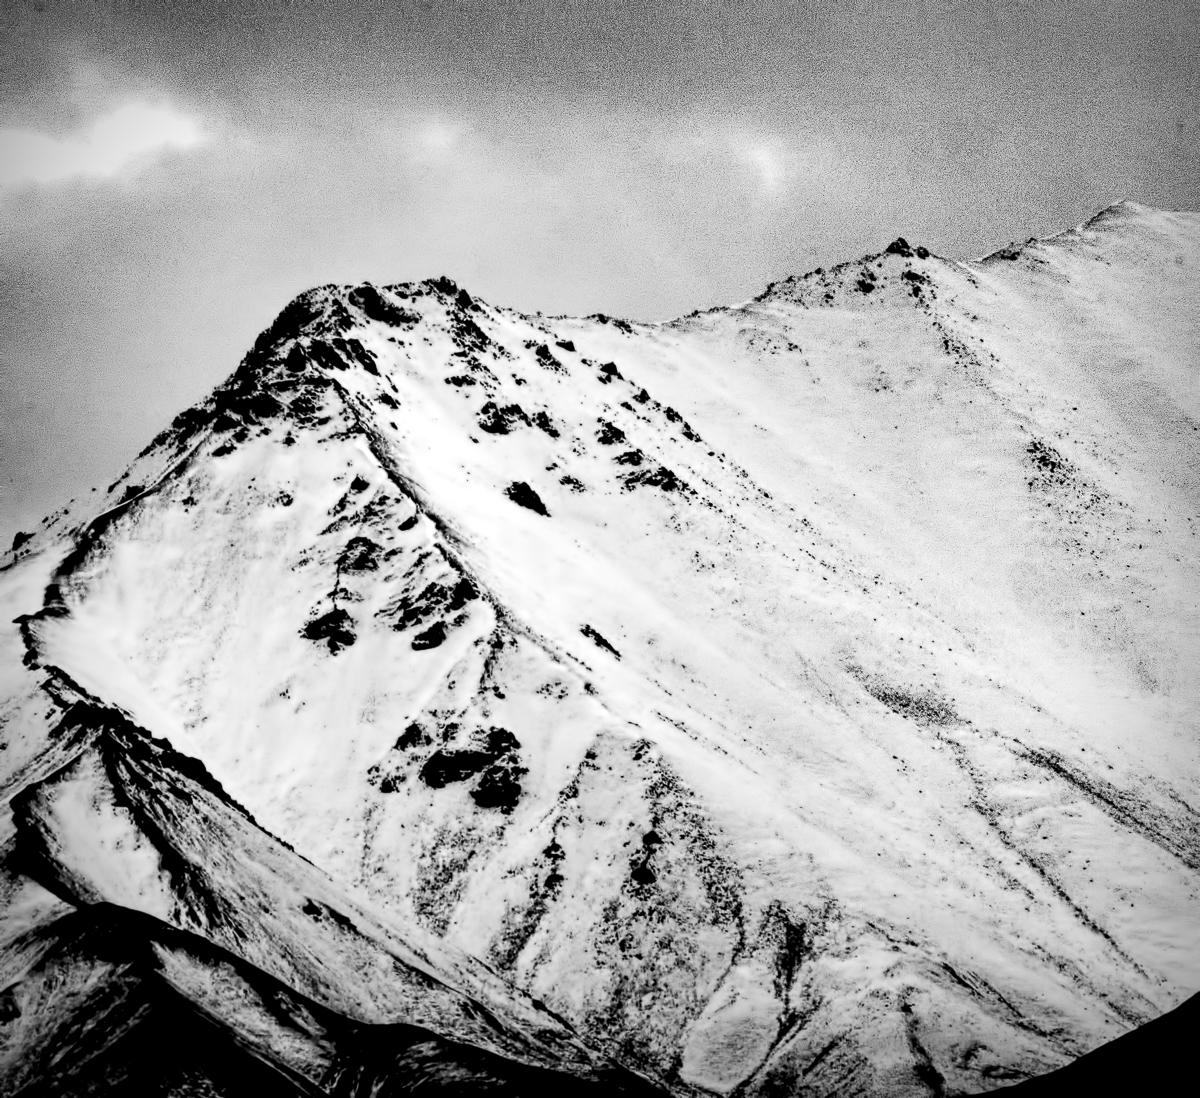 Closeup of a Denali ridge